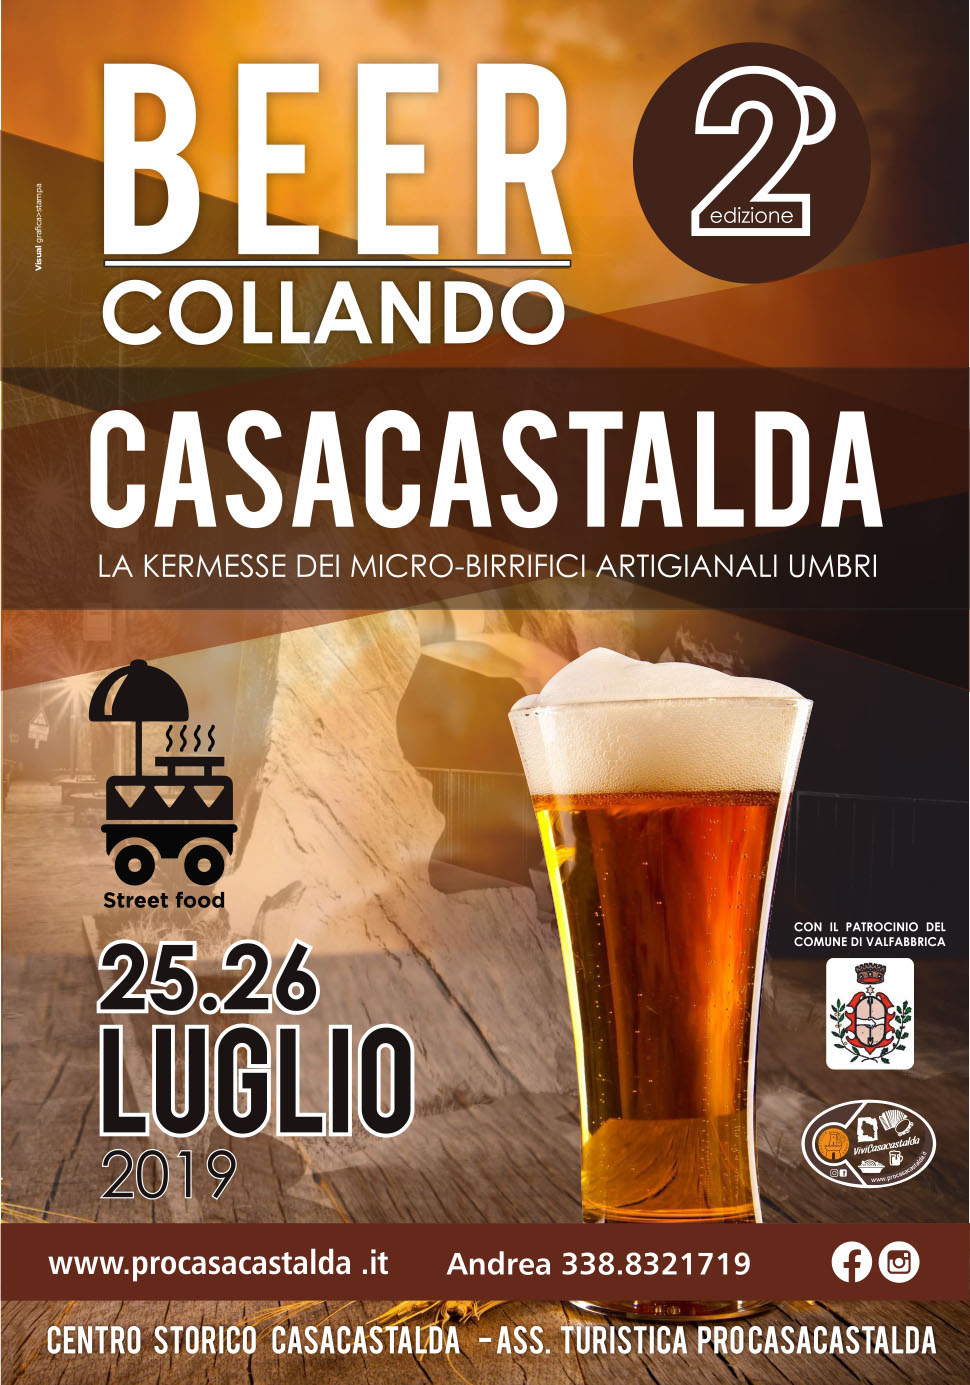 Beercollando 2019, l'evento sulla birra artigianale in Umbria